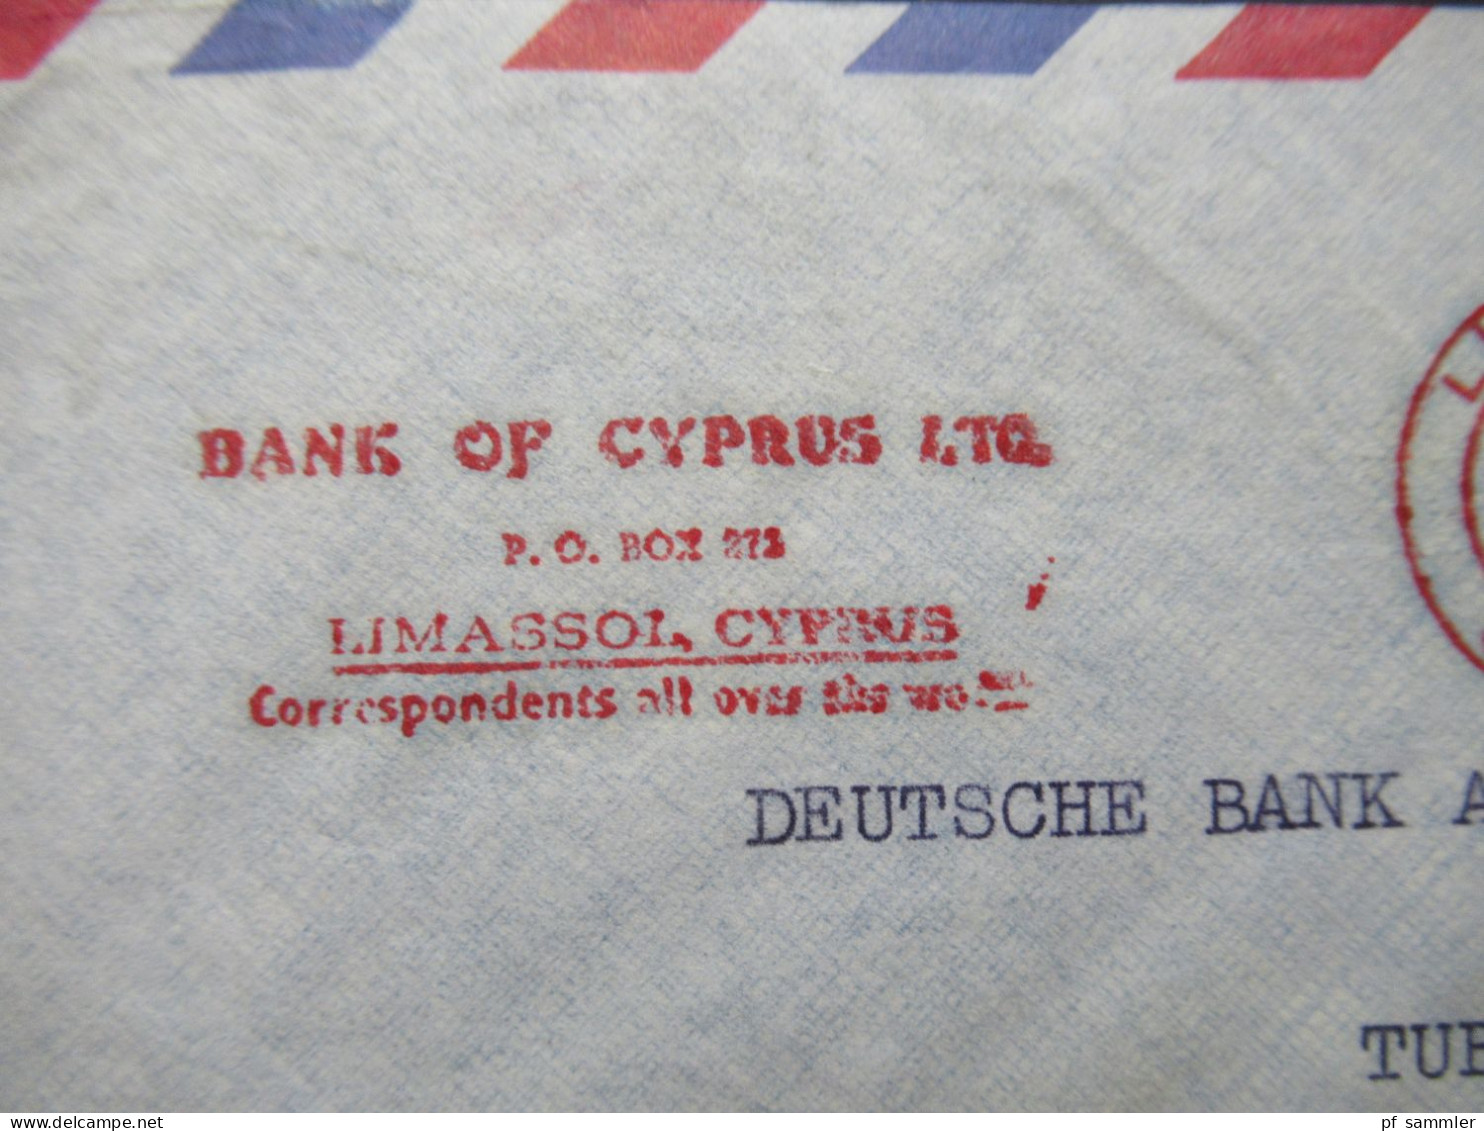 Zypern 1961 Par Avion Auslandsbrief Nach Tübingen Mit Freistempel AFS Limasol Cyprus Bank Of Cyprus LTD - Brieven En Documenten